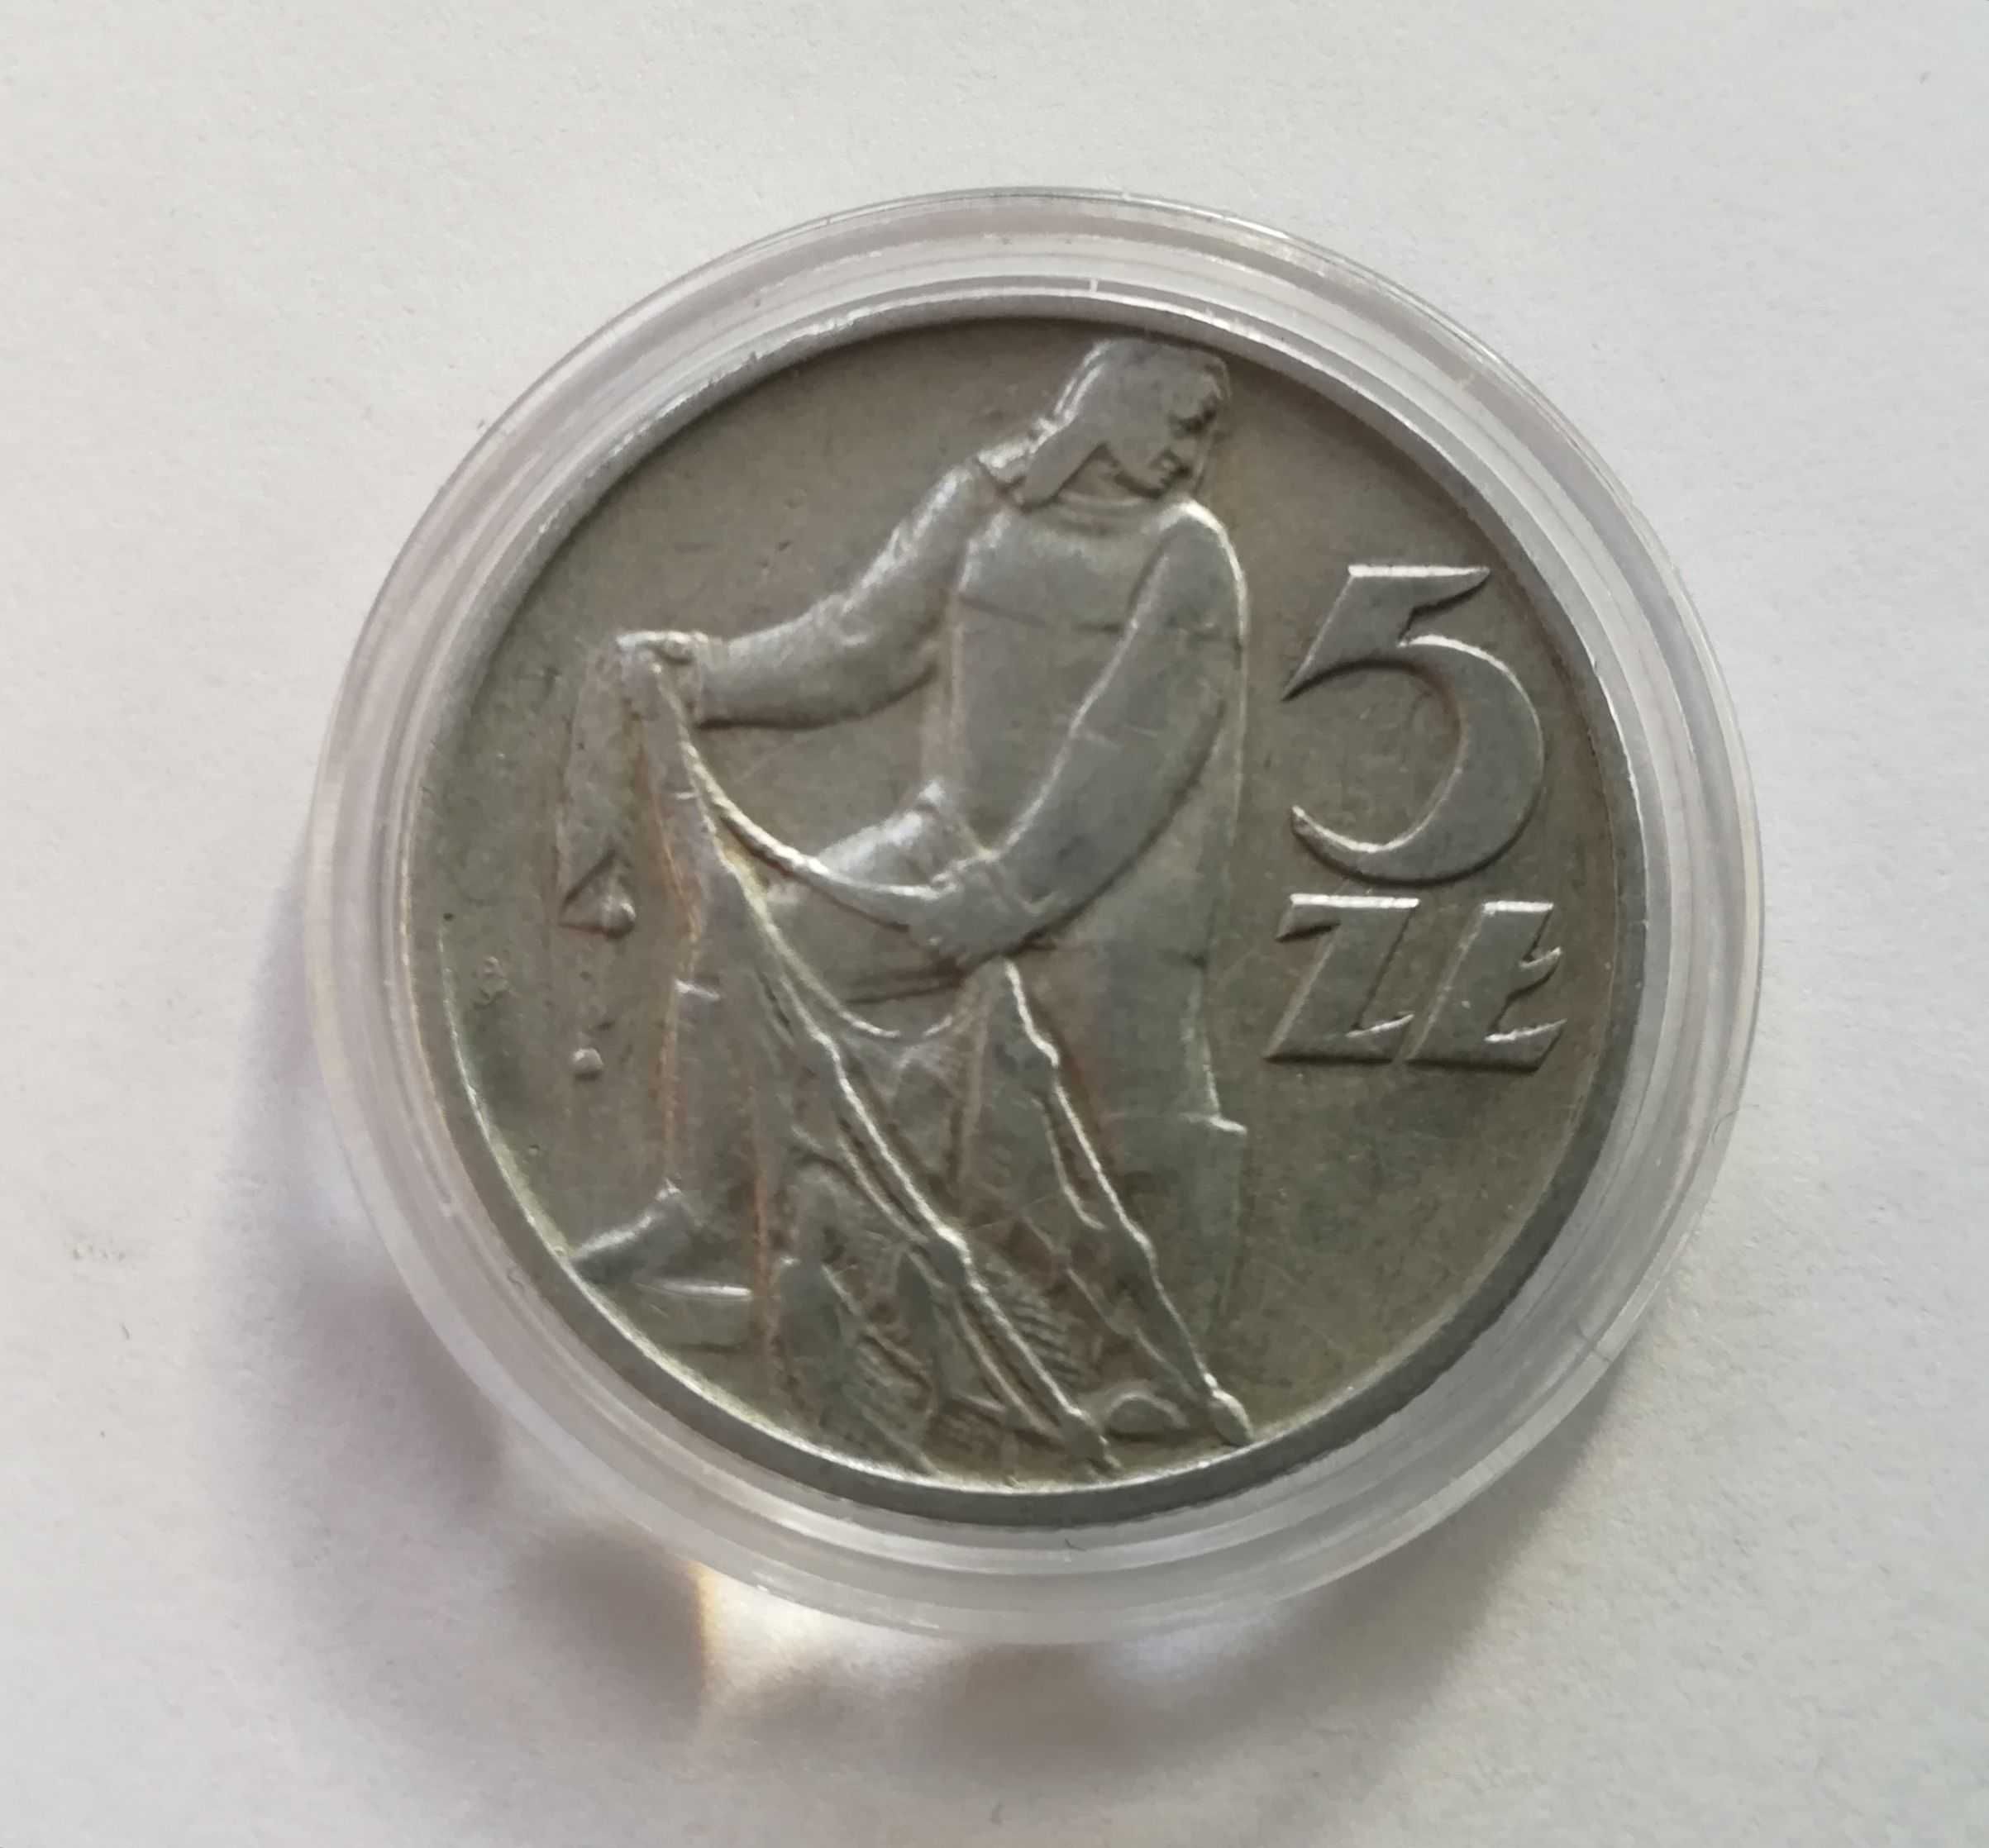 Moneta 5 zł z Rybakiem z 1959 r, stan bardzo dobry